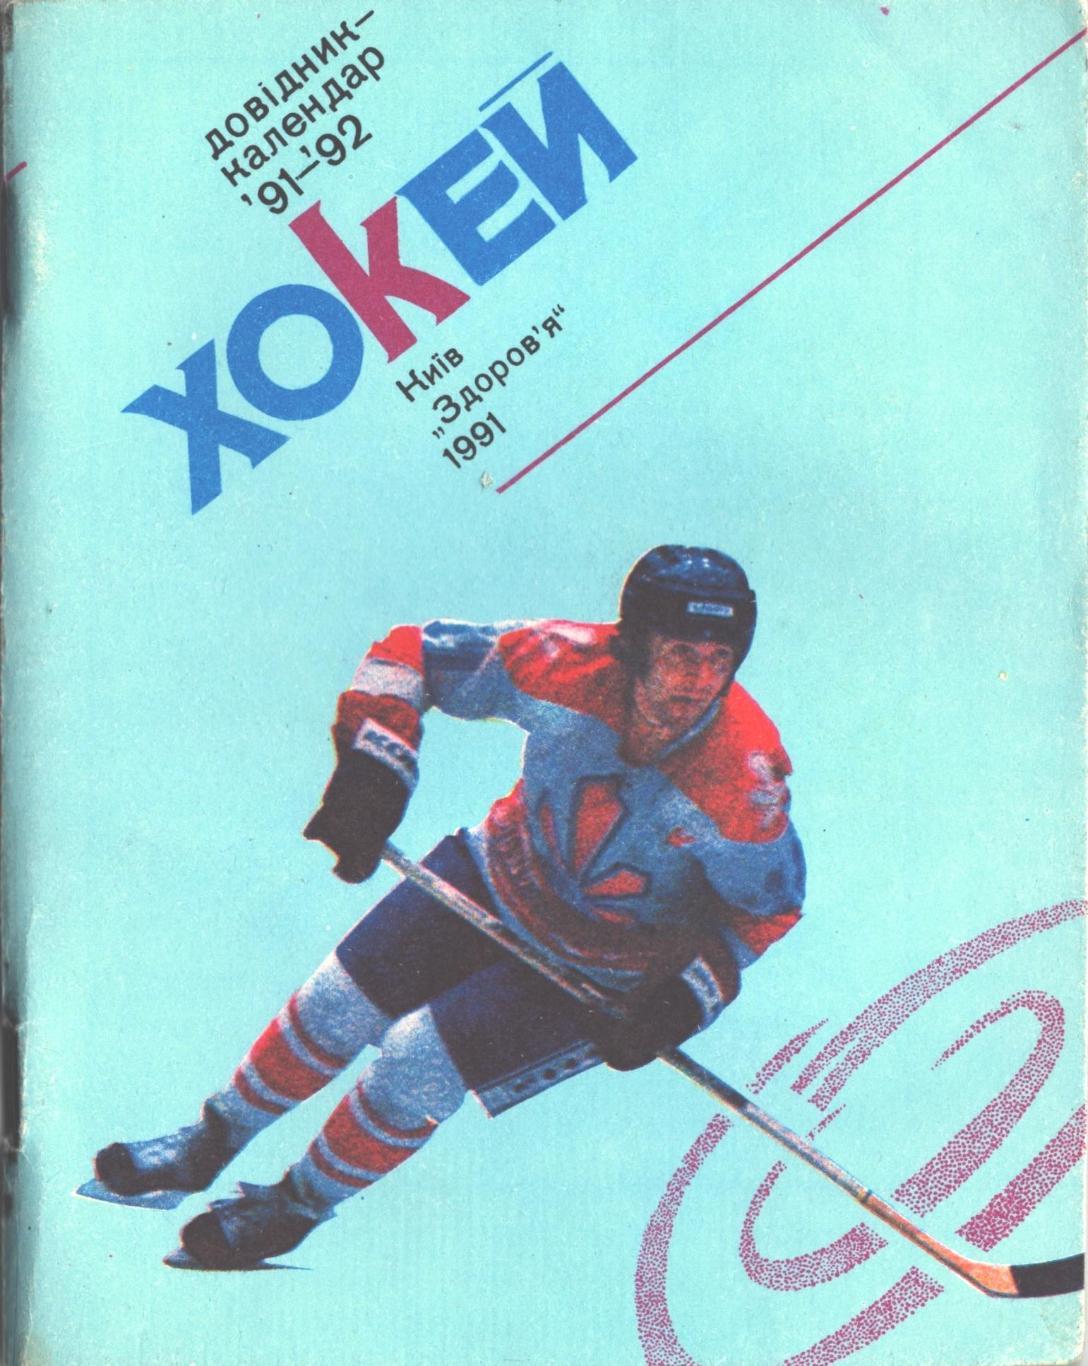 Хоккей 91/92. Справочник-календарь. Киев Здоровье 1991 год.